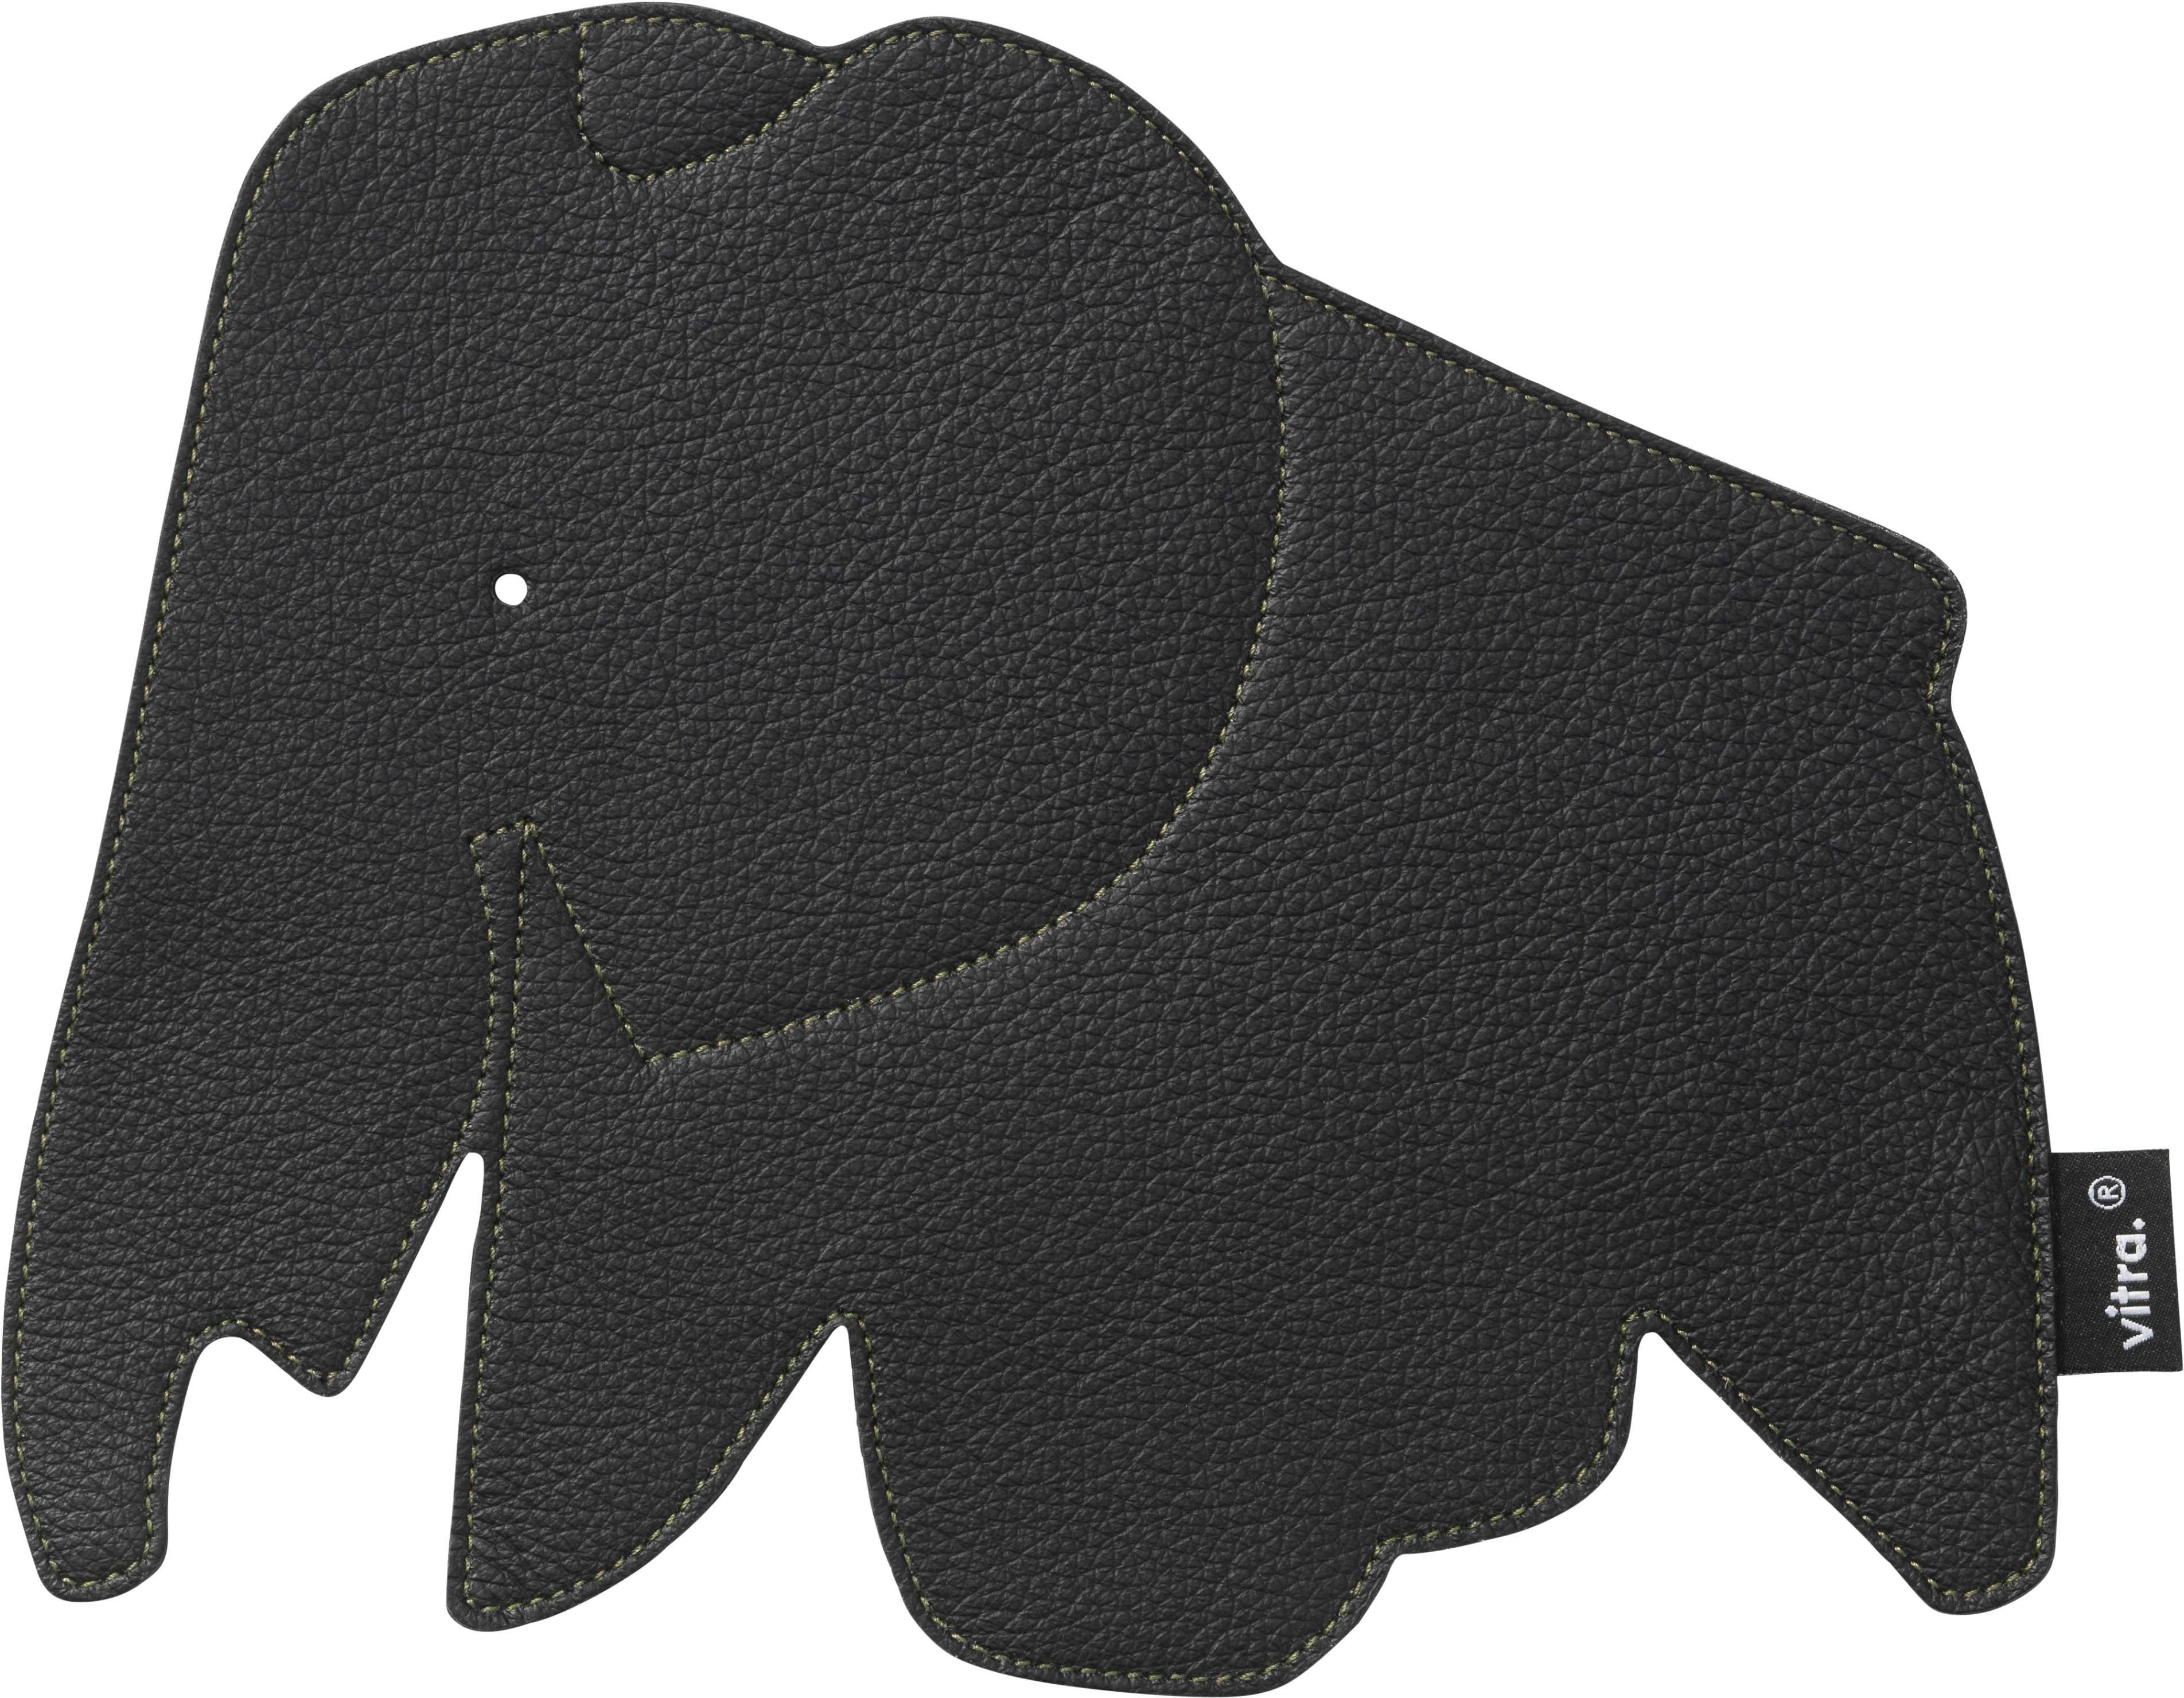 Spruit Inspectie Verwachting Bestel Elephant Pad van Vitra voor slechts € 25 - originele goederen -  topselectie